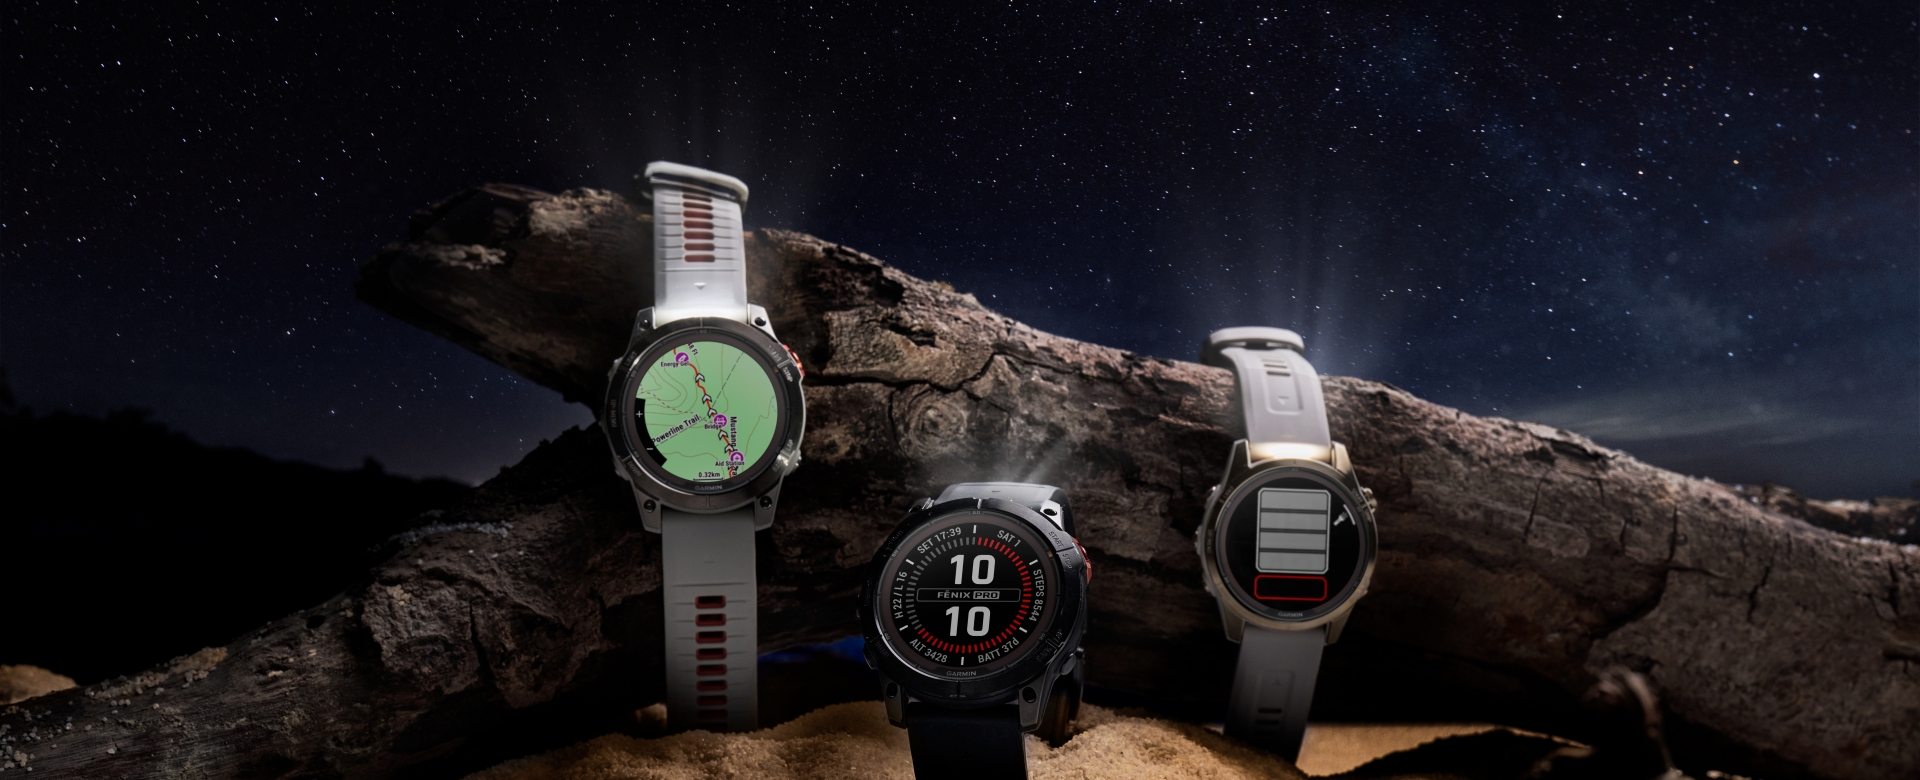 Garmin ra mắt 2 mẫu đồng hồ GPS hiệu suất cao